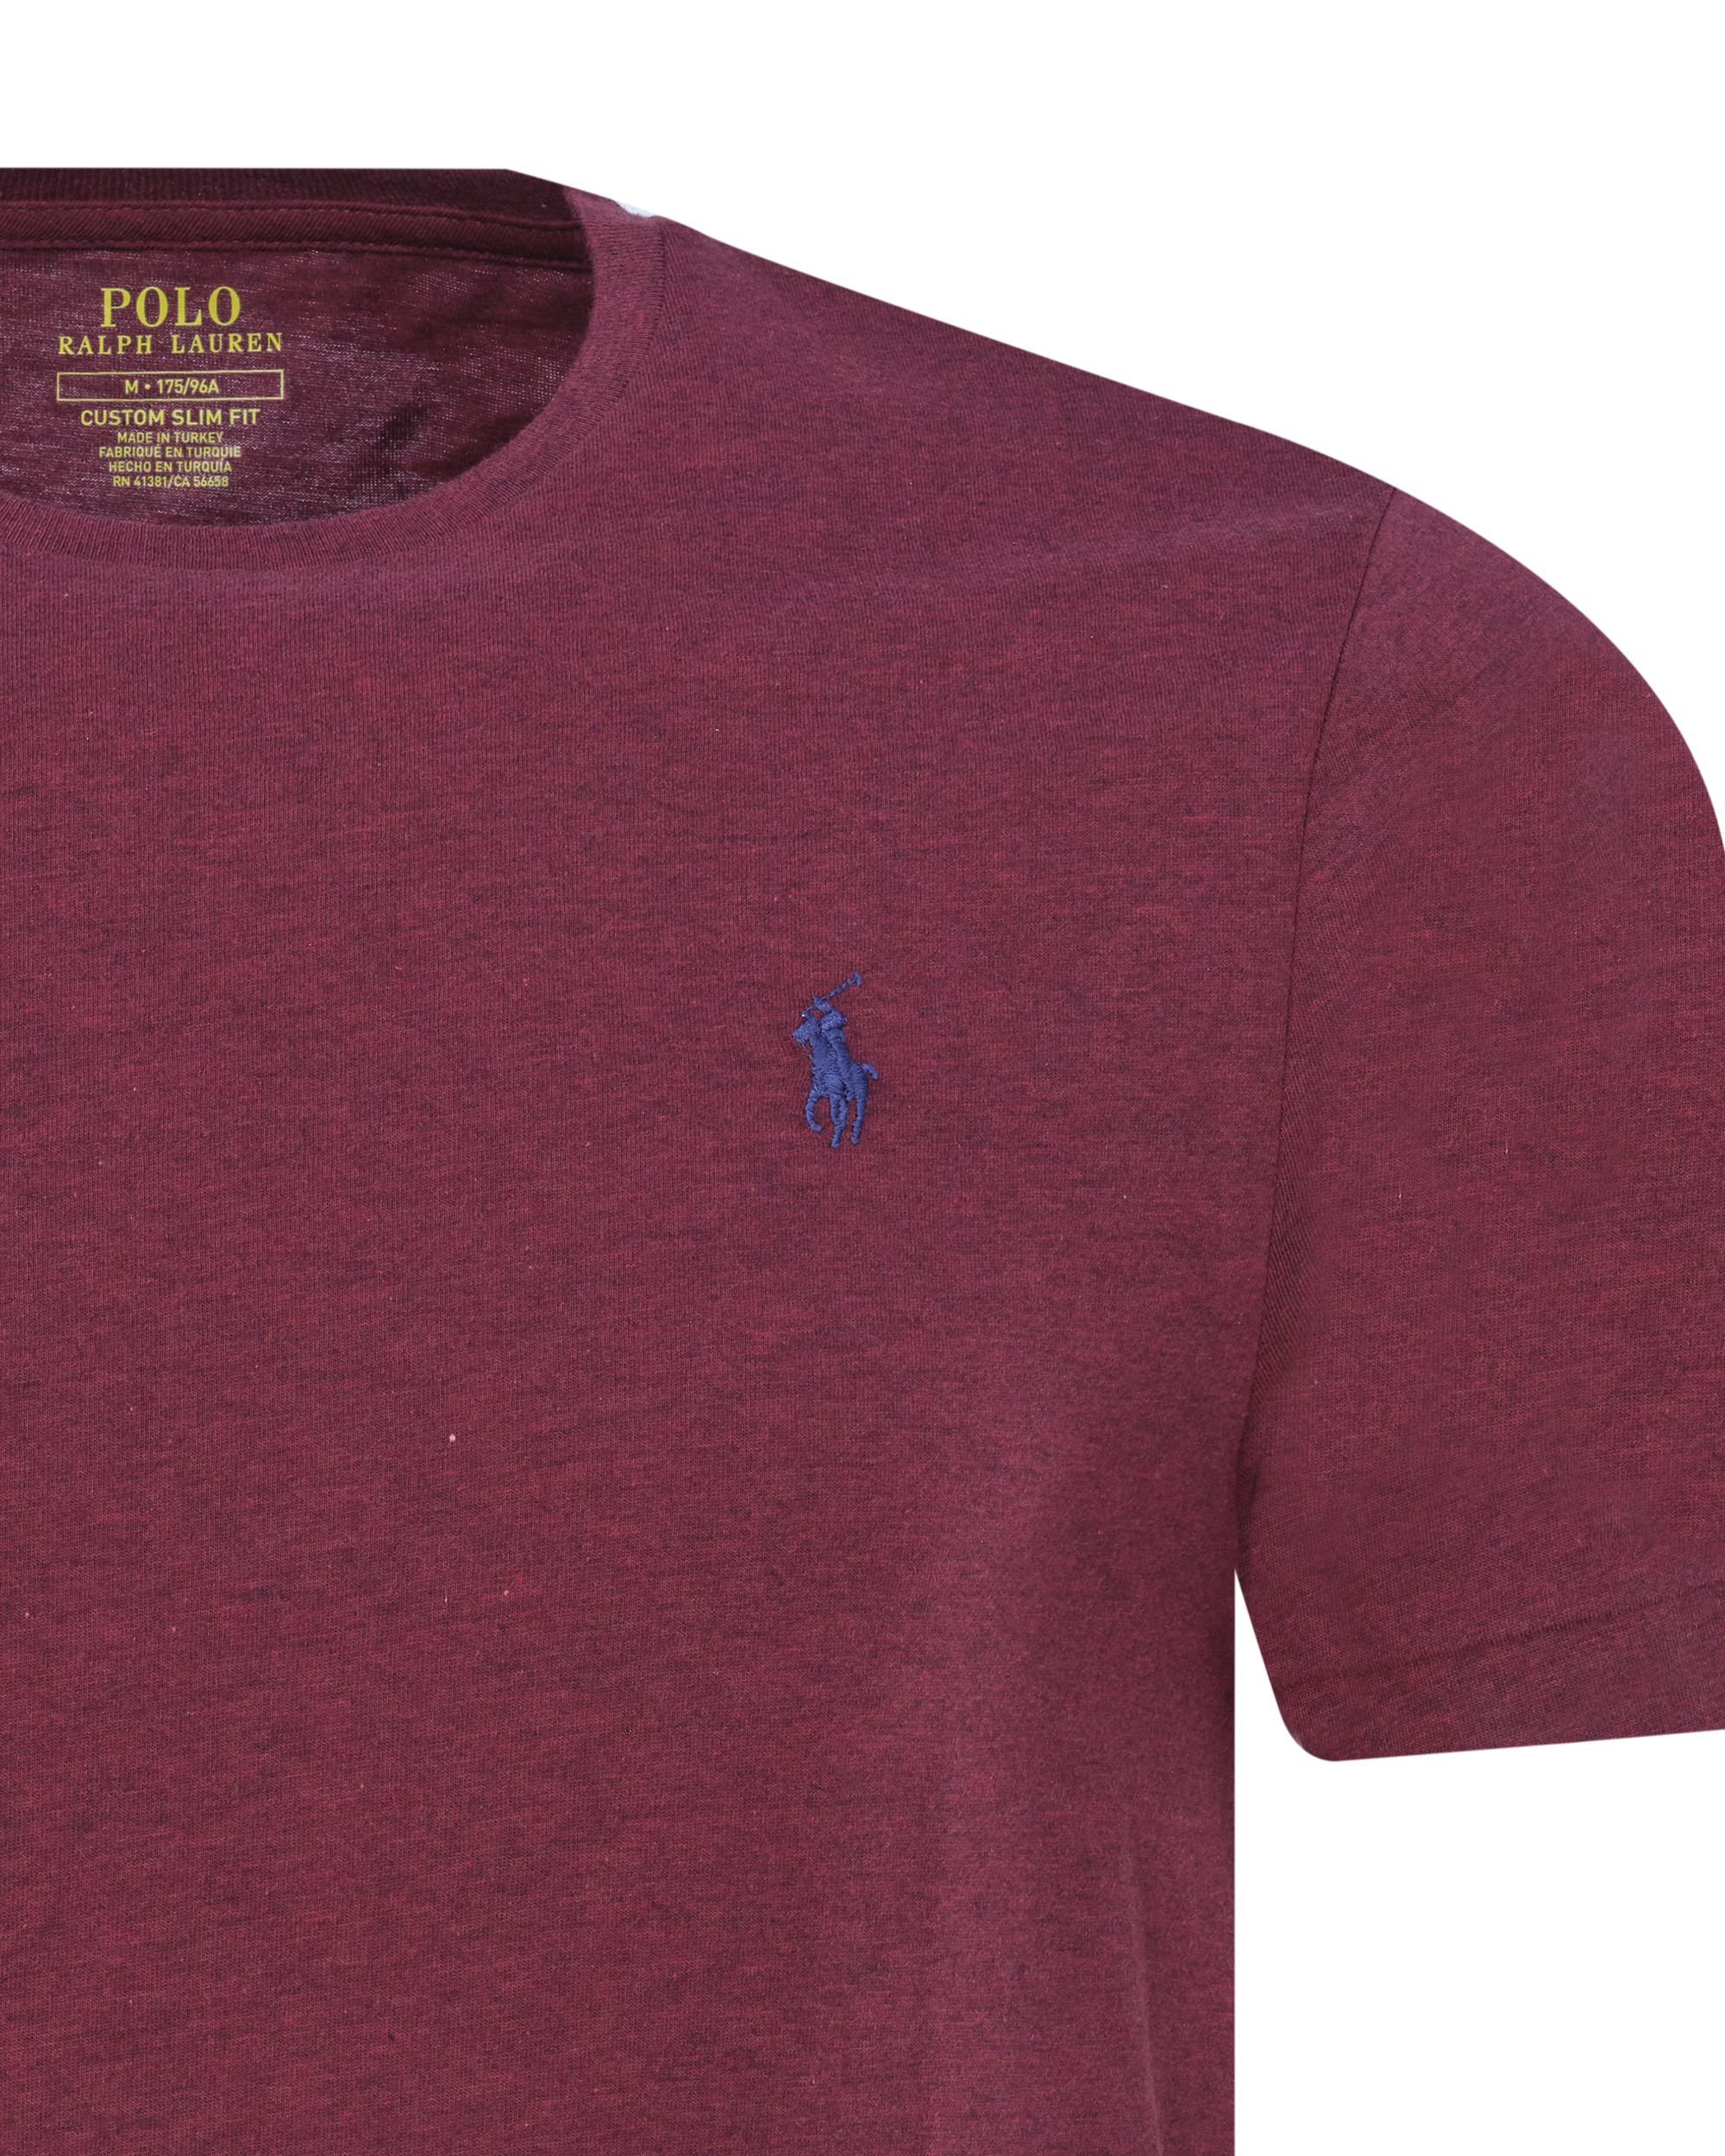 Polo Ralph Lauren T-shirt KM Bordeaux 080555-001-L